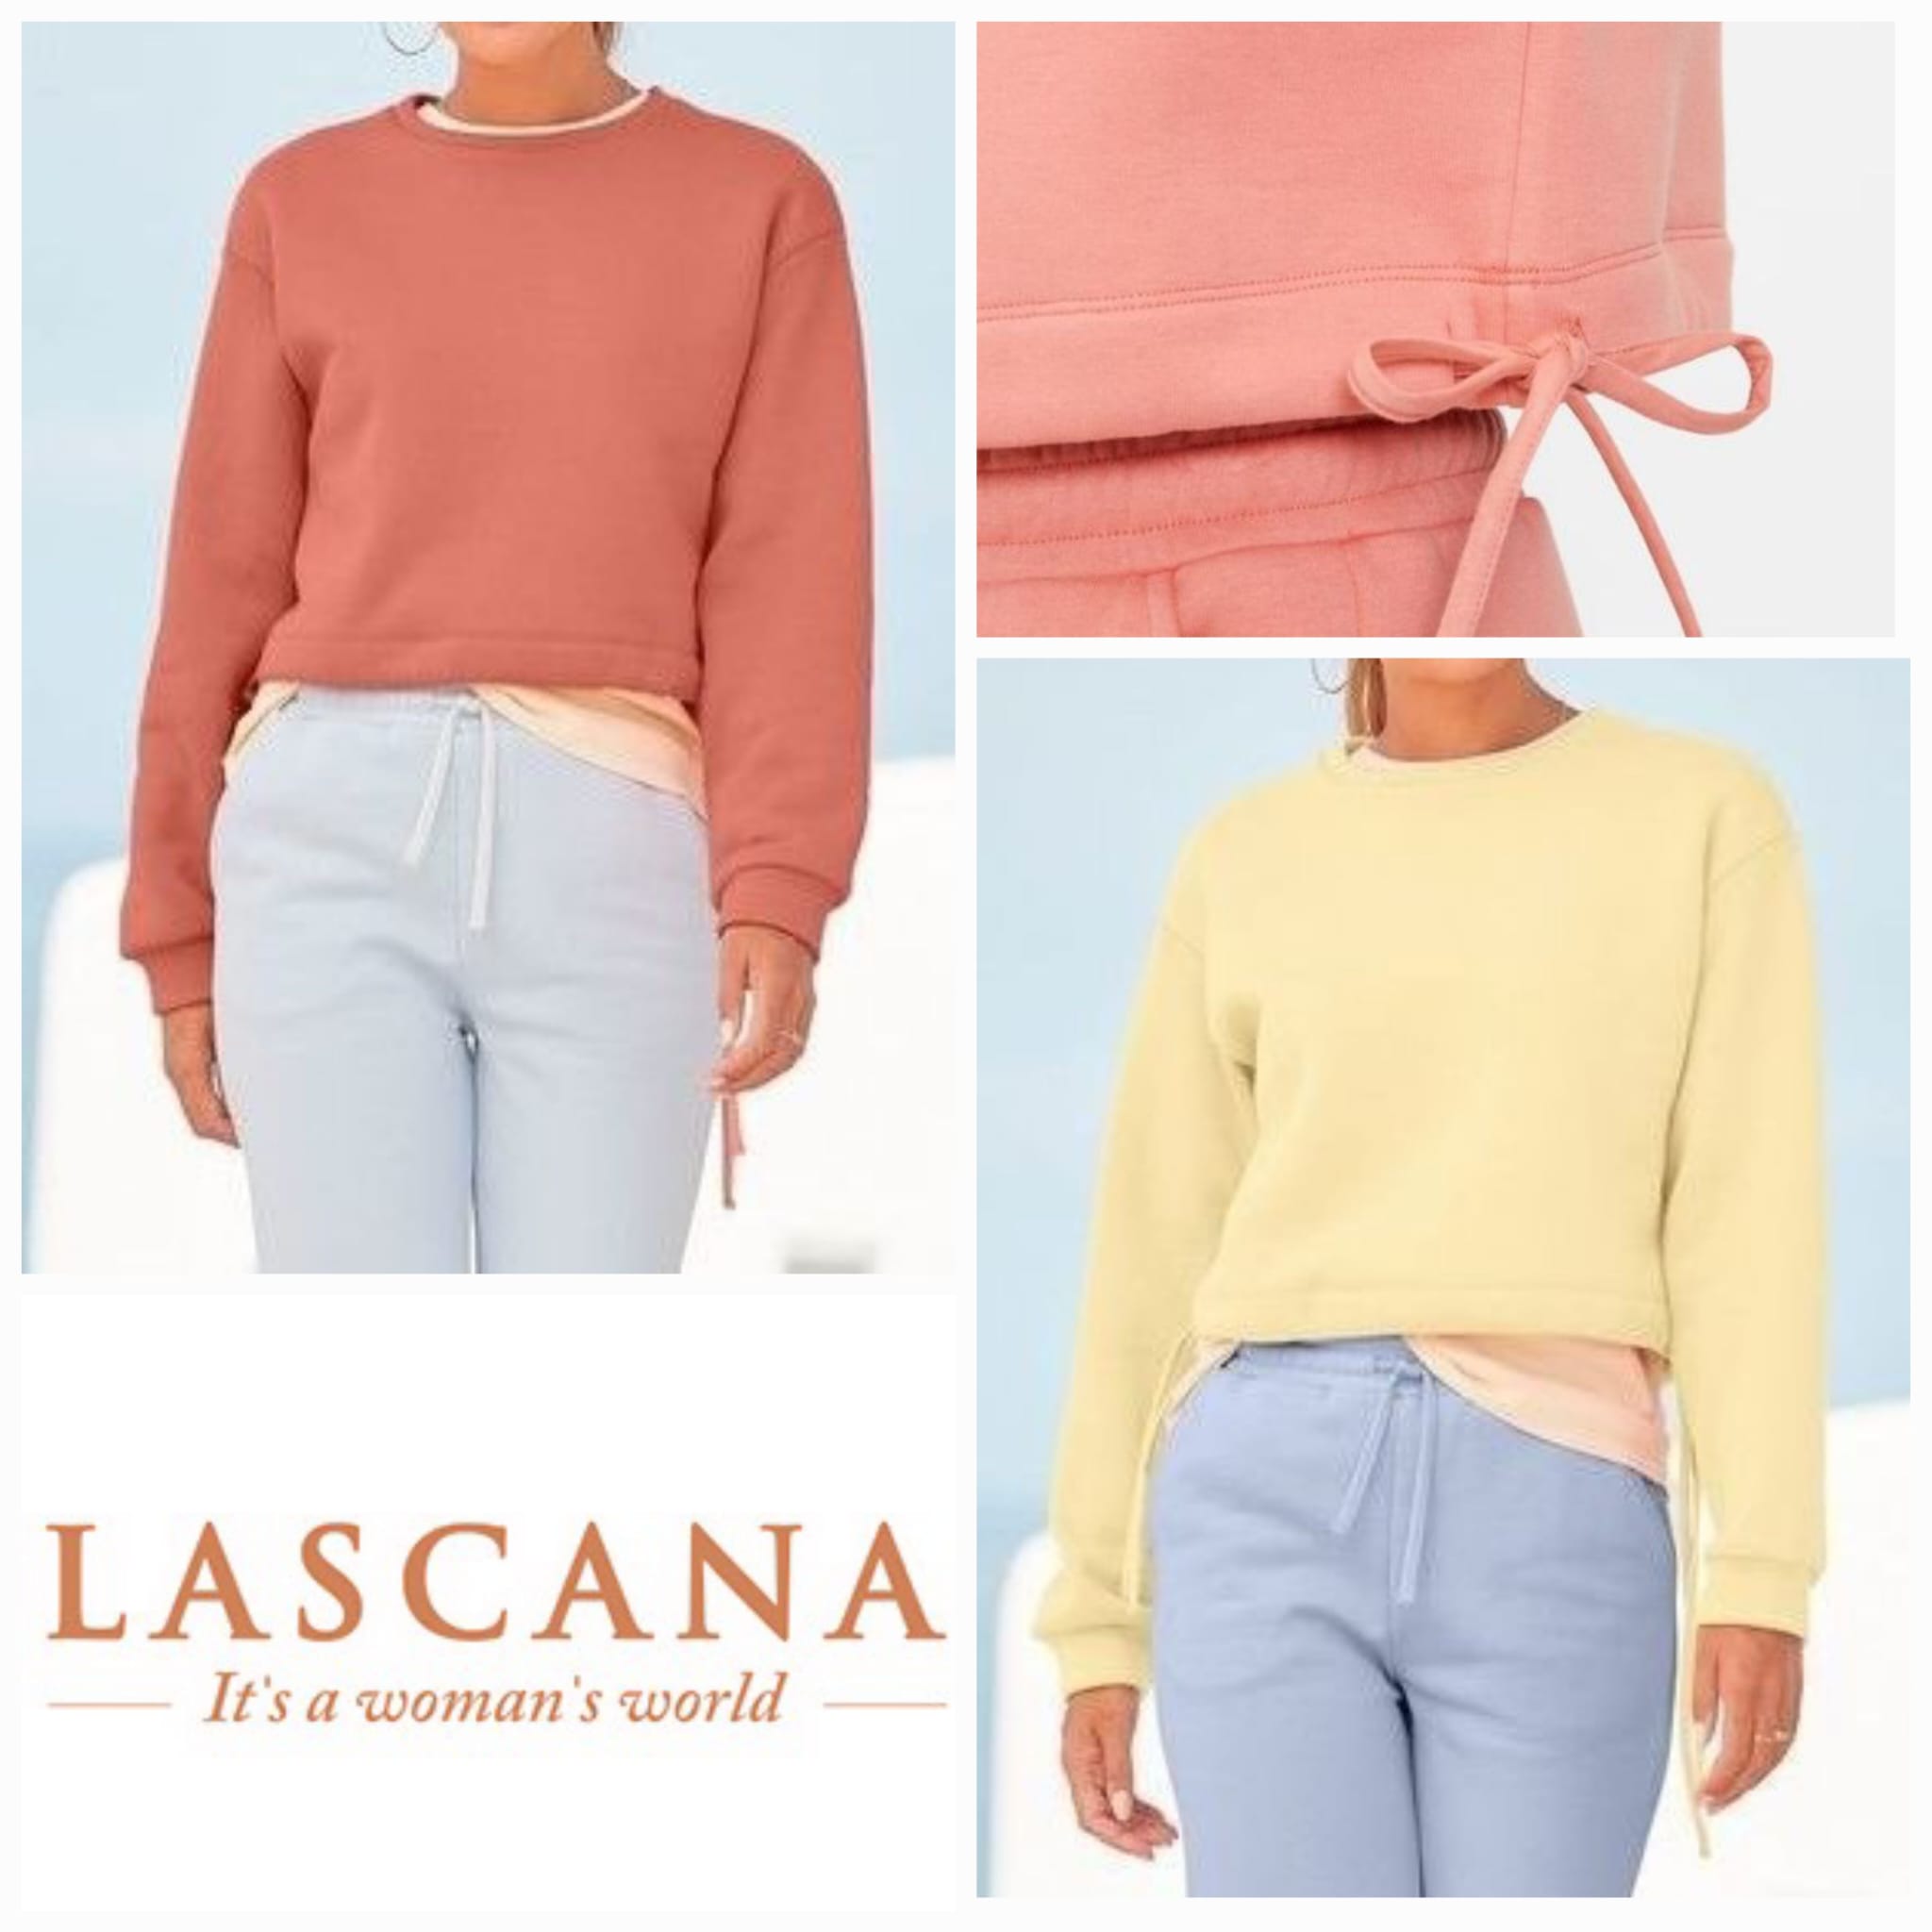 Damen-Sweatshirts von Lascana